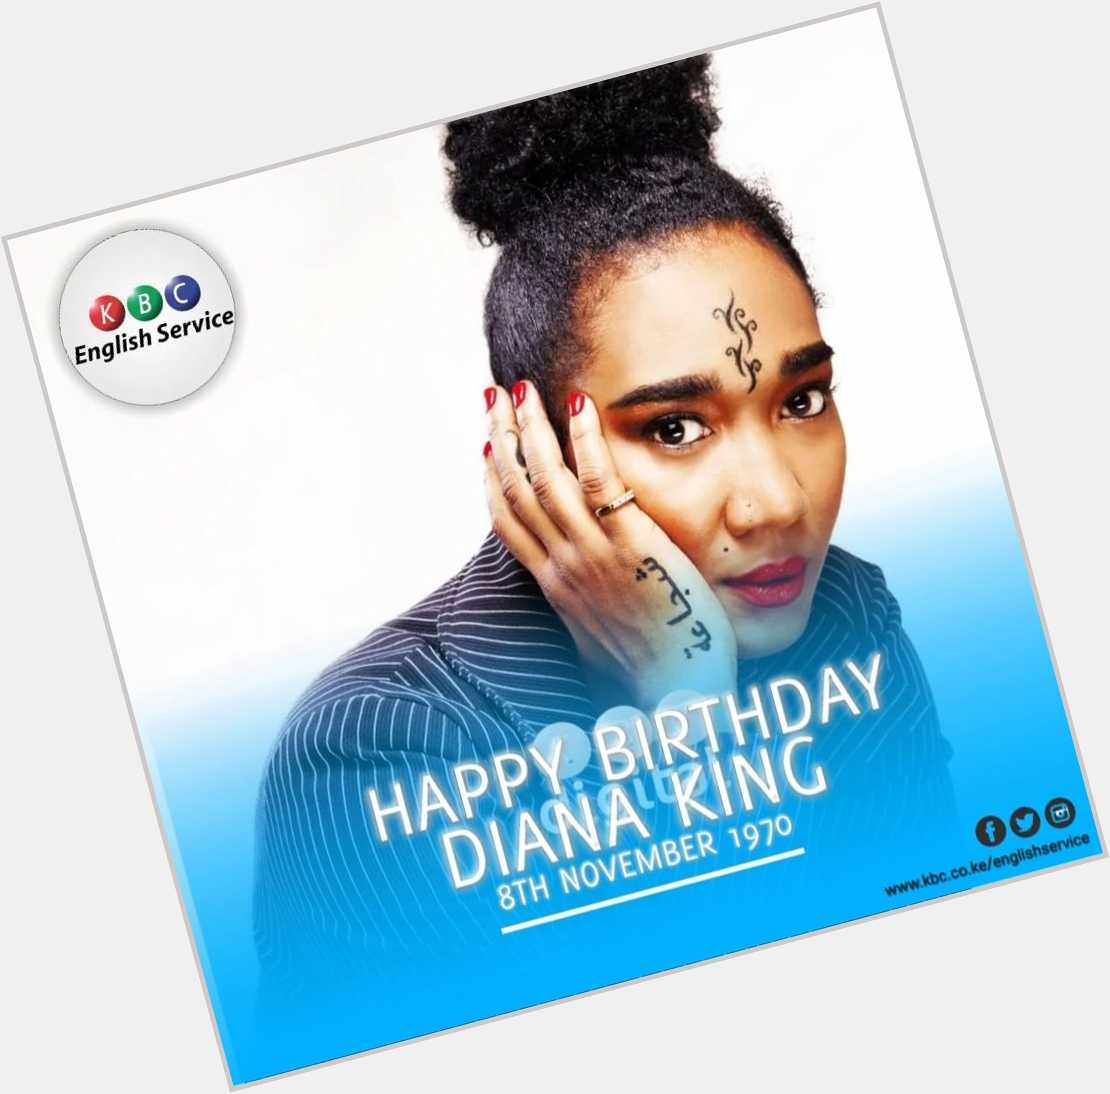 Happy Birthday: DIANA KING
Born: 8th November 1970

^PMN   